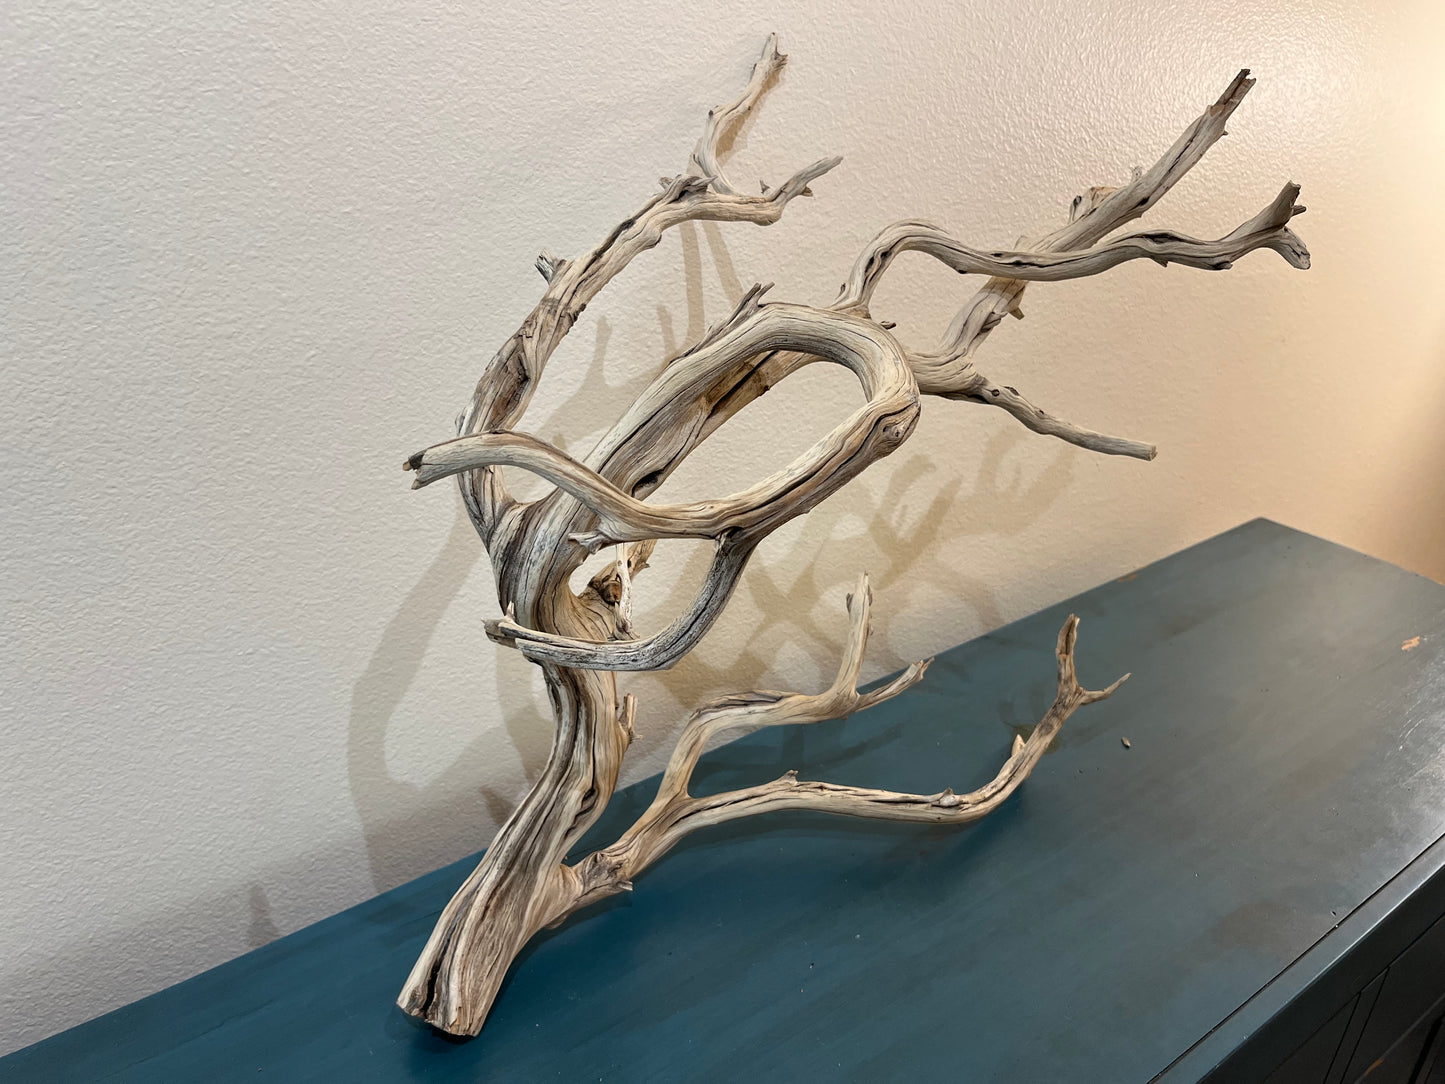 24" Manzanita Driftwood Branch, XL Driftwood, Aquascape Centerpiece #3060